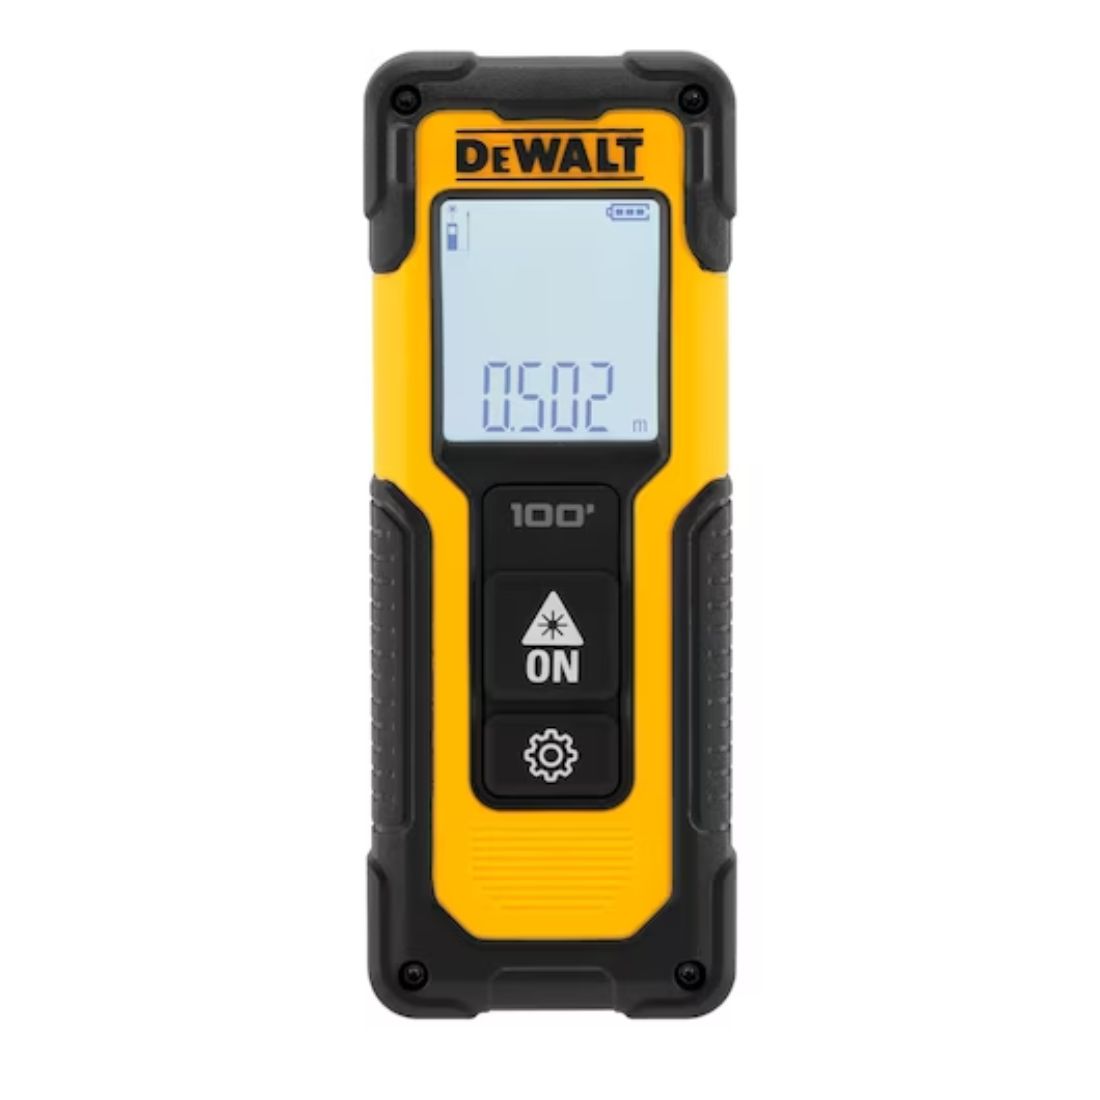 Dewalt DWHT77100-XJ 30m Cordless Laser Distance Meter